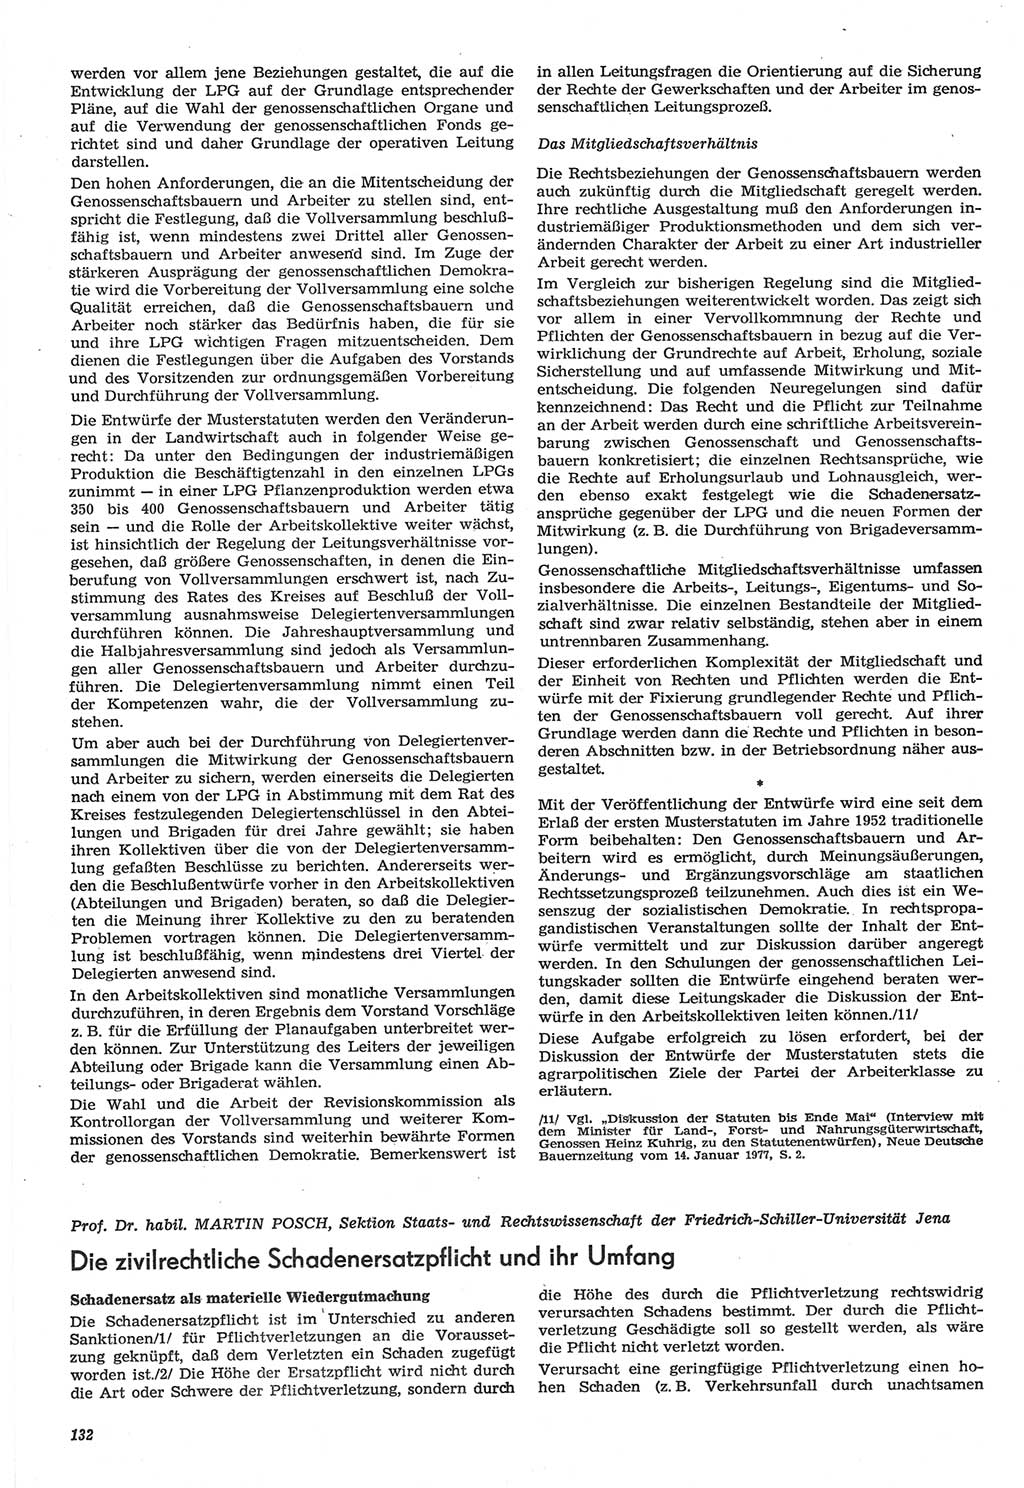 Neue Justiz (NJ), Zeitschrift für Recht und Rechtswissenschaft-Zeitschrift, sozialistisches Recht und Gesetzlichkeit, 31. Jahrgang 1977, Seite 132 (NJ DDR 1977, S. 132)